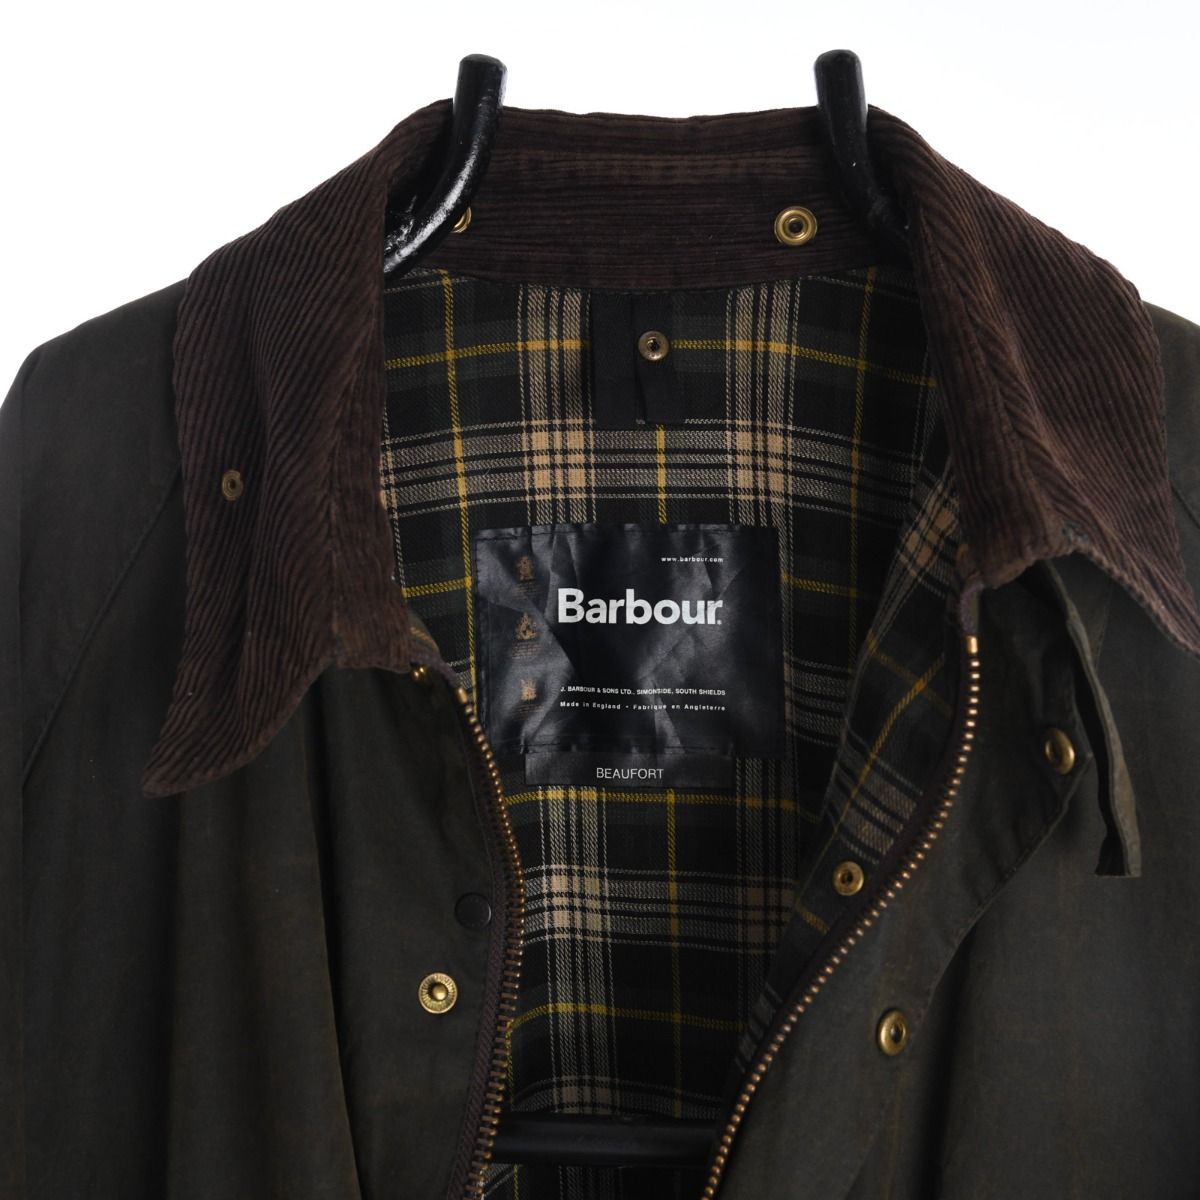 Barbour Beaufort Wax Cotton Jacket